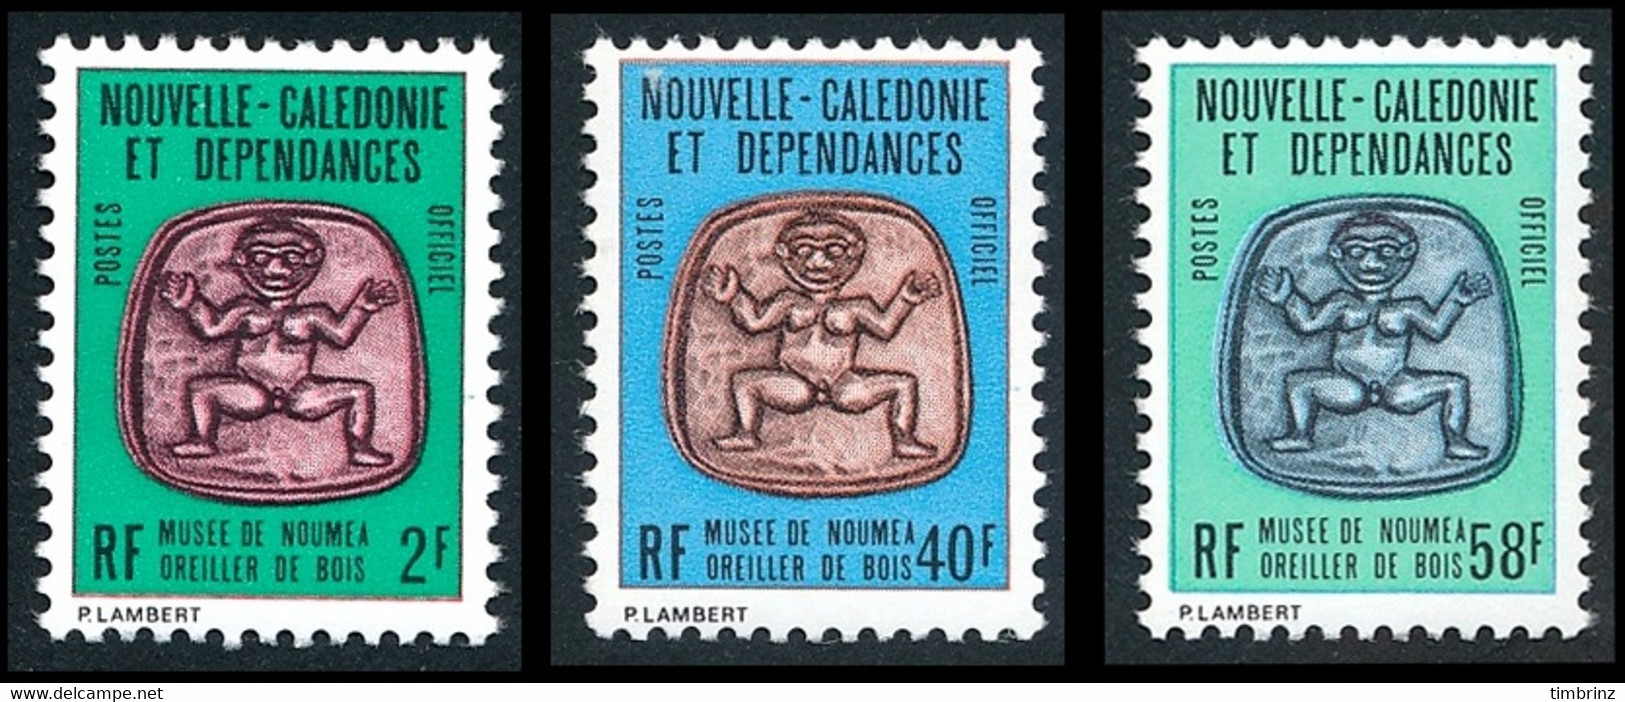 NOUV.-CALEDONIE 1986 - Yv. Service 38 39 Et 40 ** Cote= 4,00 EUR - Musée Nouméa. Oreiller Bois (3 Val) ..Réf.NCE25864 - Service